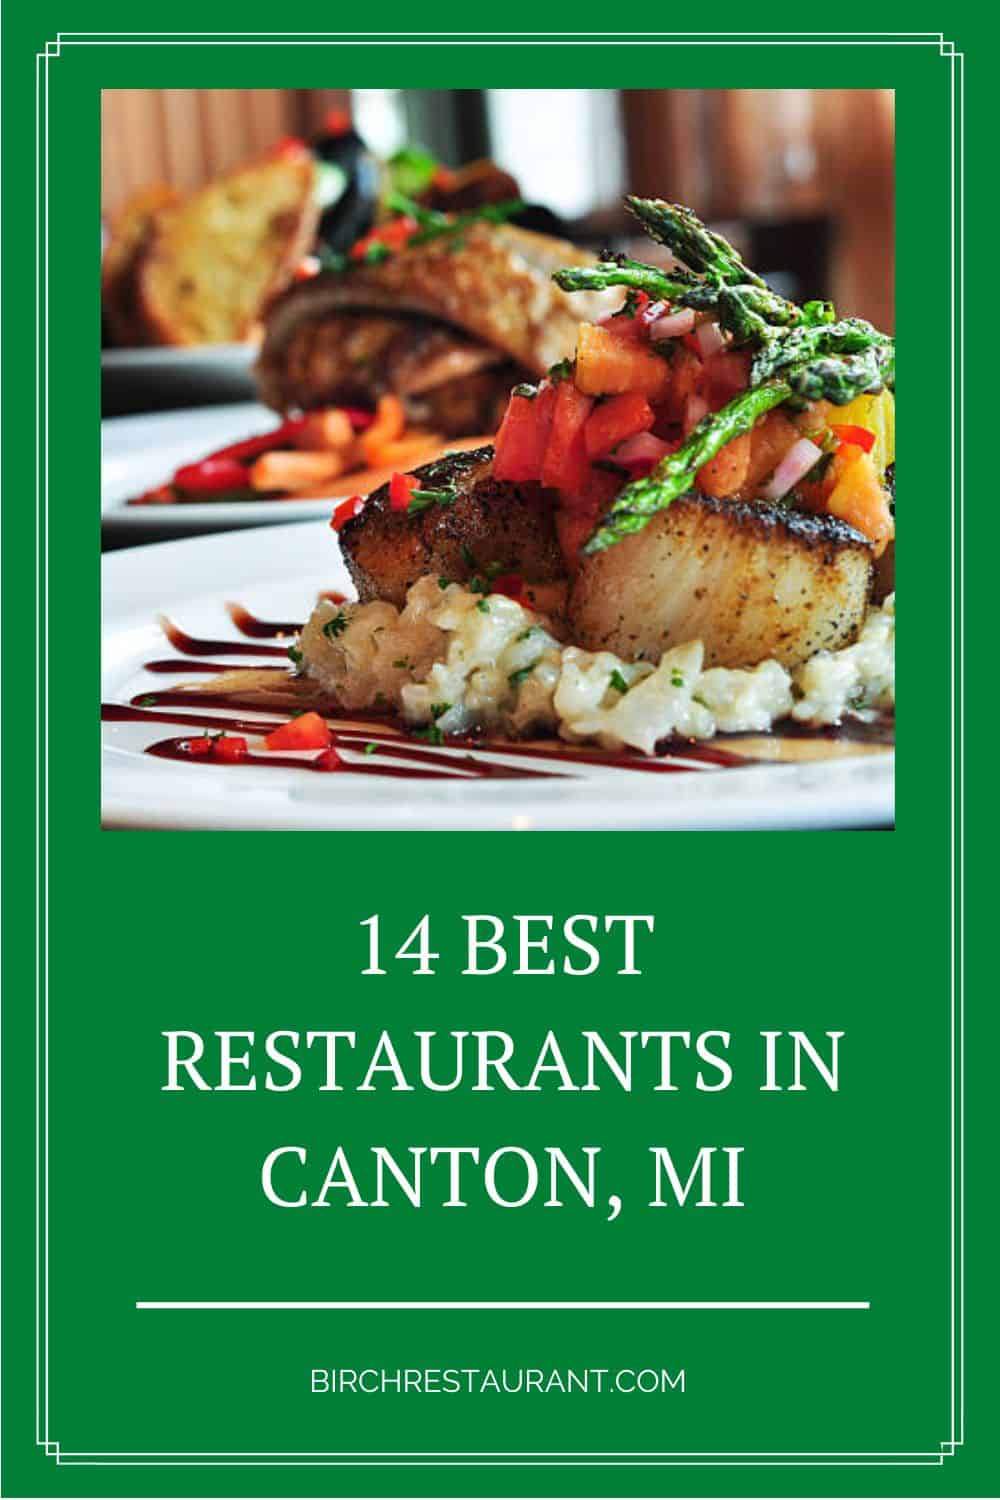 Best Restaurants in Canton